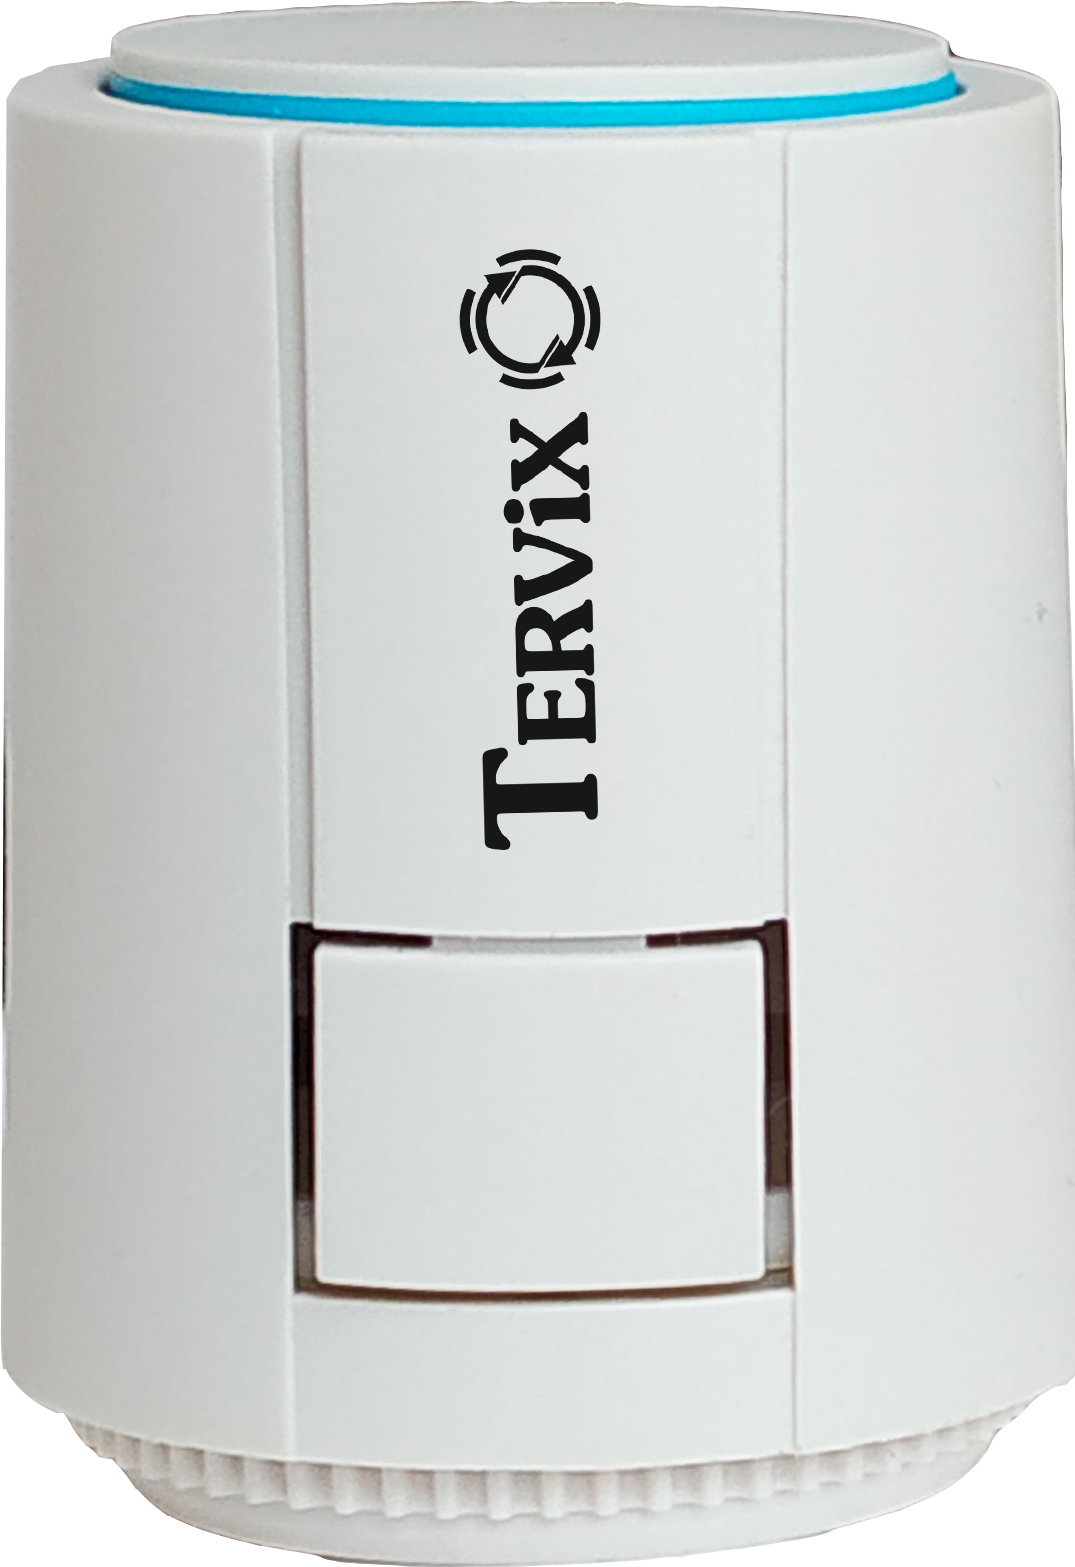 Термопривод Tervix Pro Line Egg (217211) в интернет-магазине, главное фото